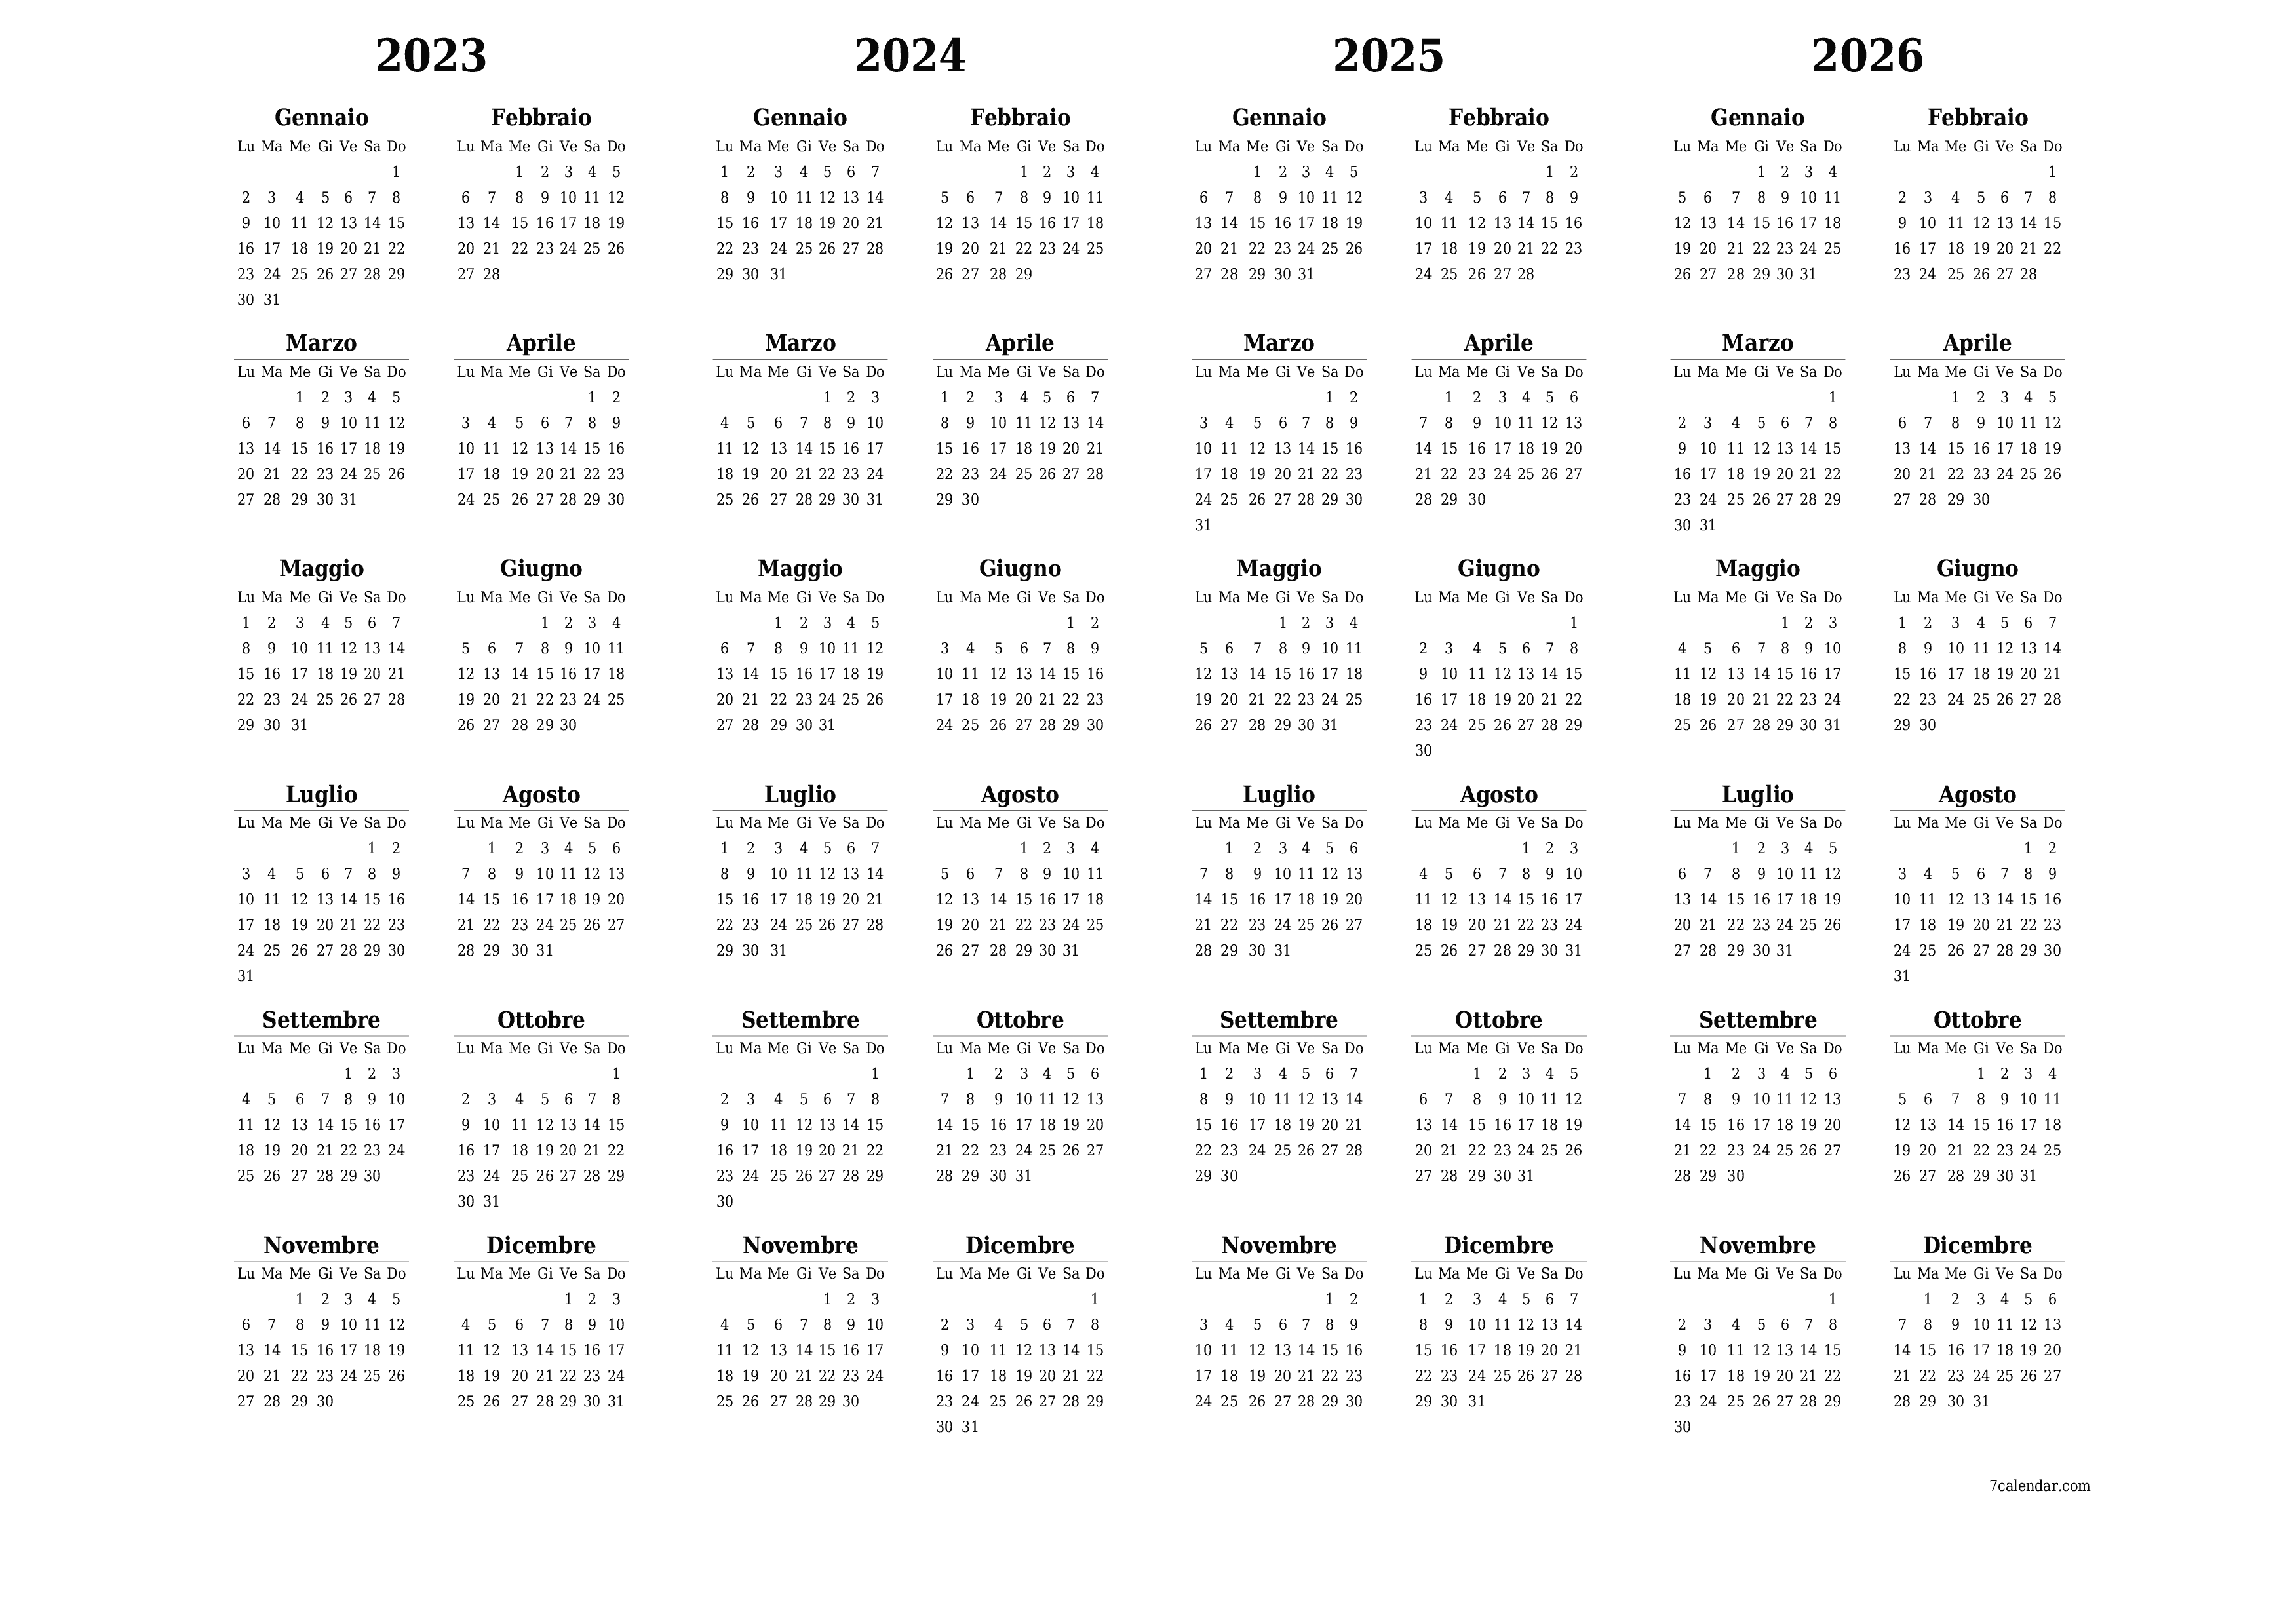  stampabile da parete modello di gratuitoorizzontale Annuale calendario Settembre (Set) 2023